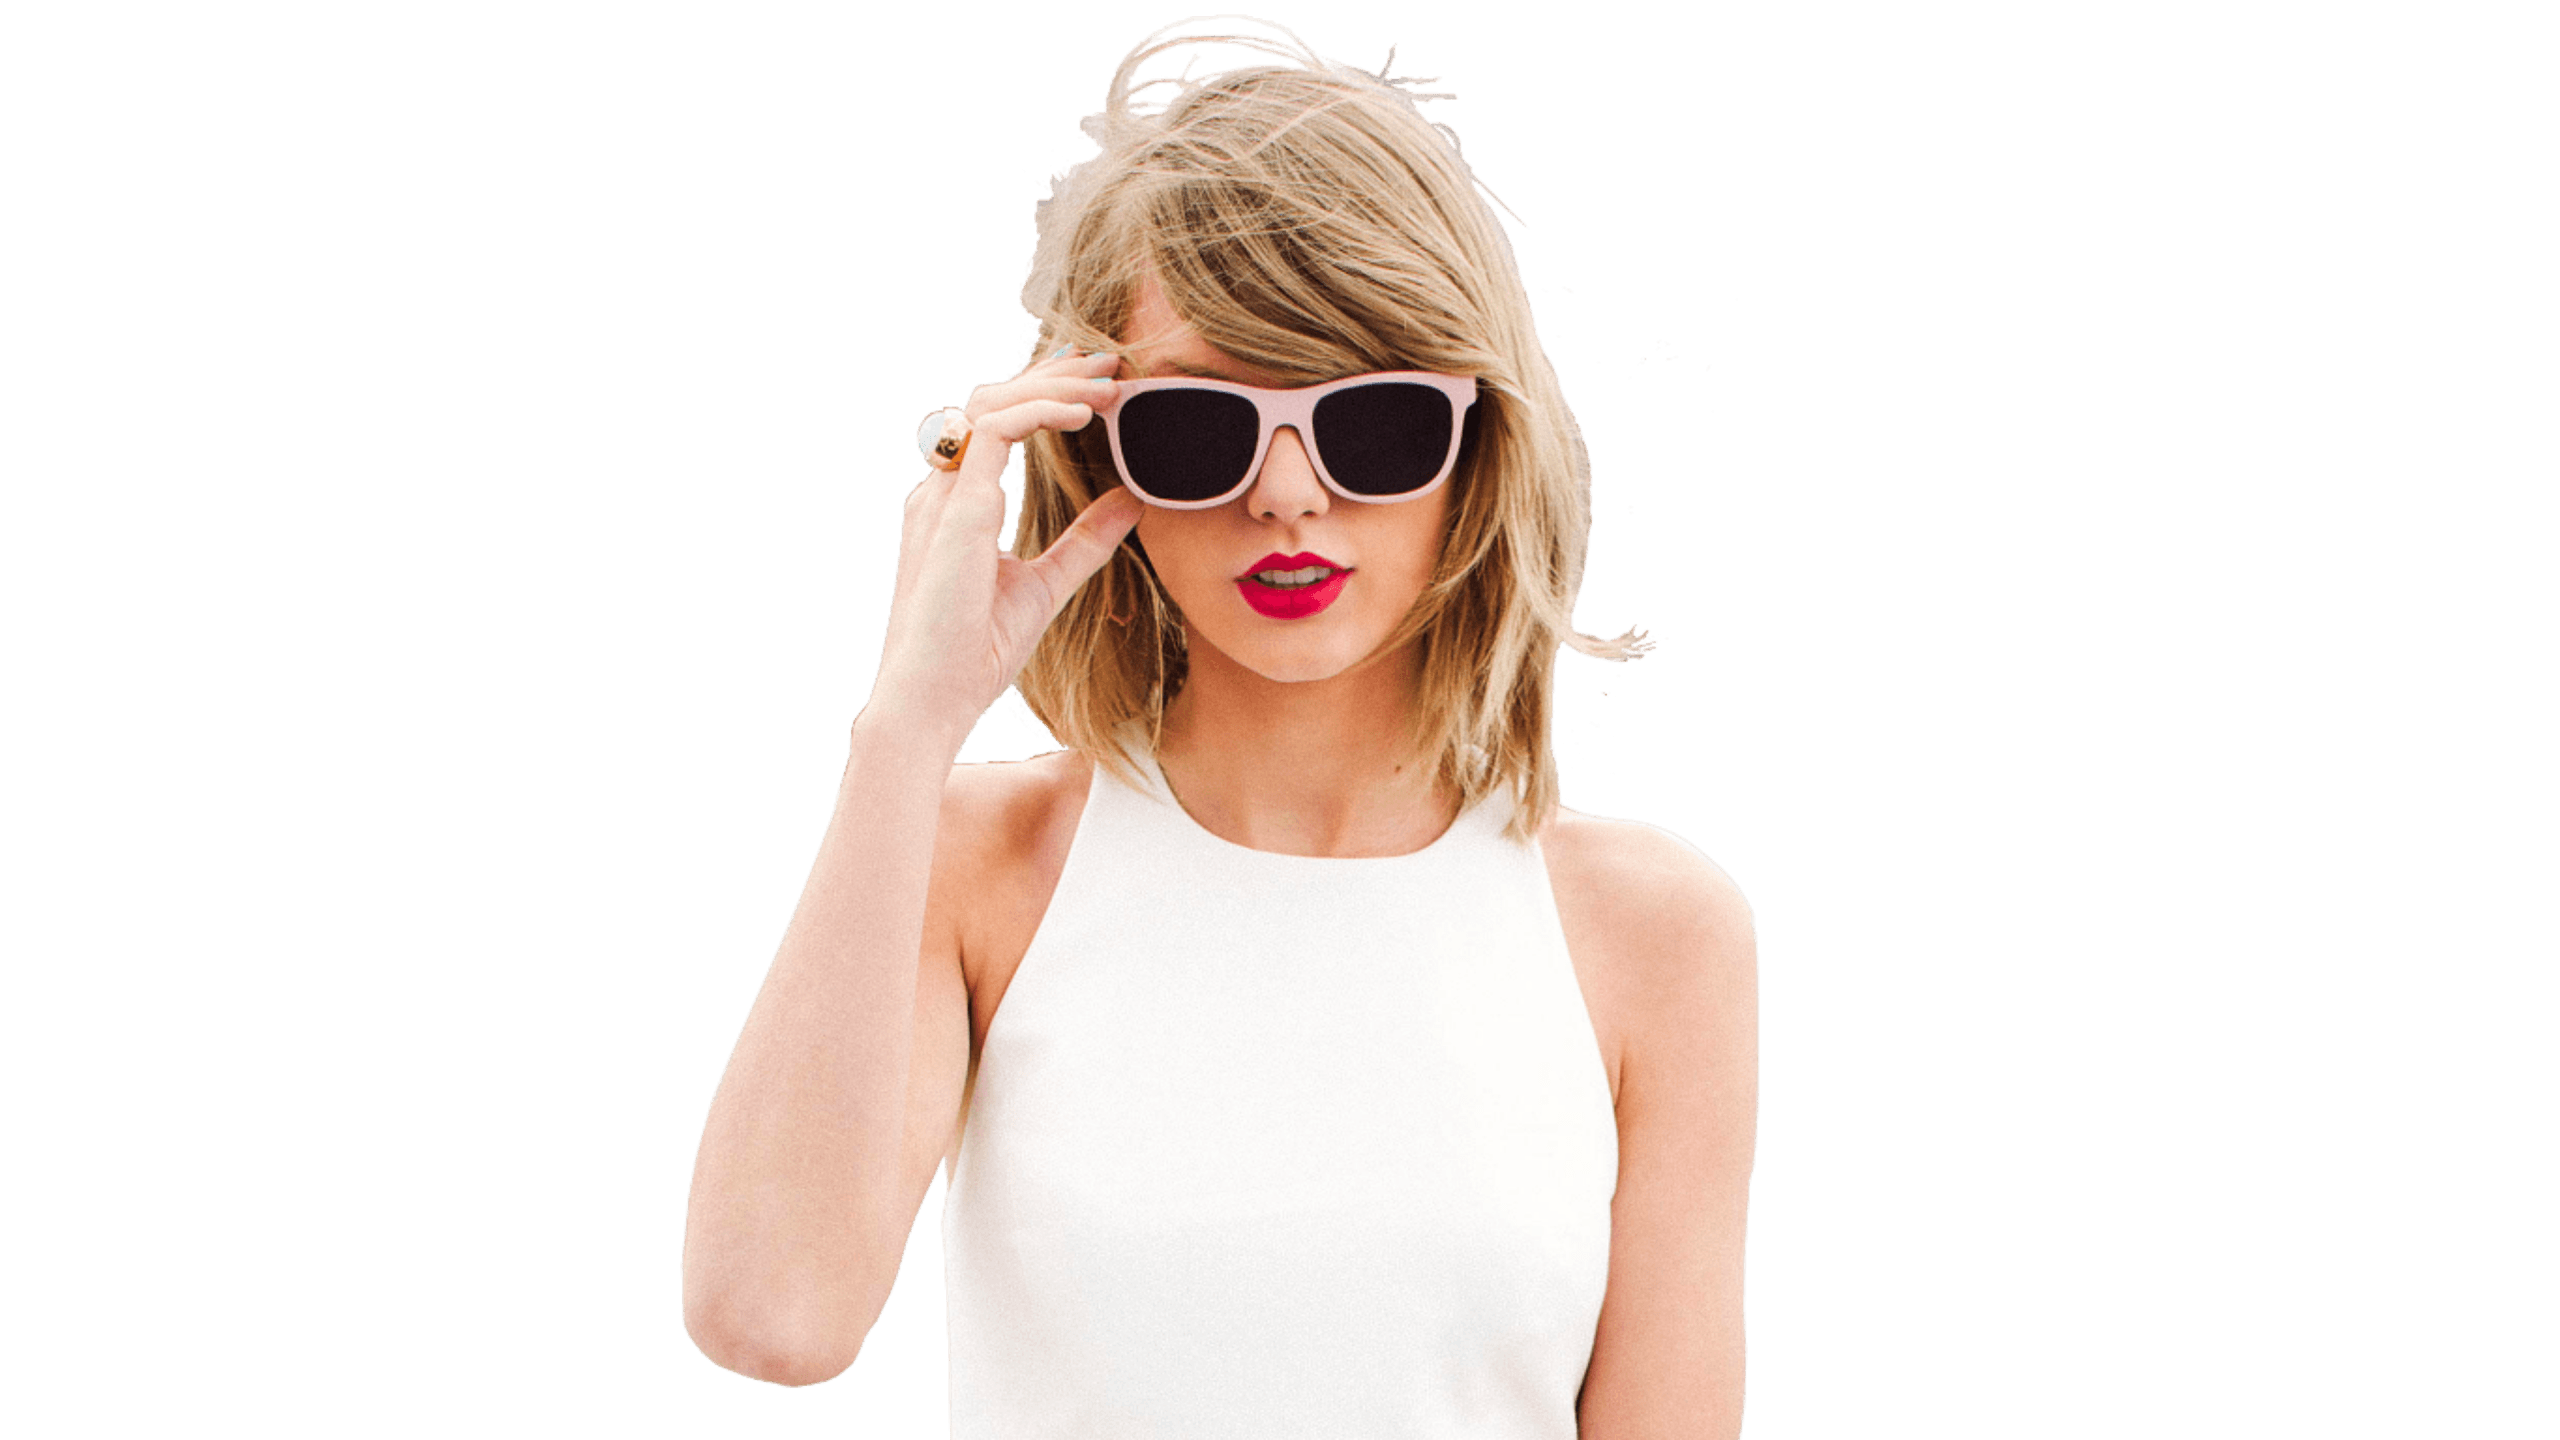 Hottest 4K Taylor Swift Wallpaper. Free 4K Wallpaper